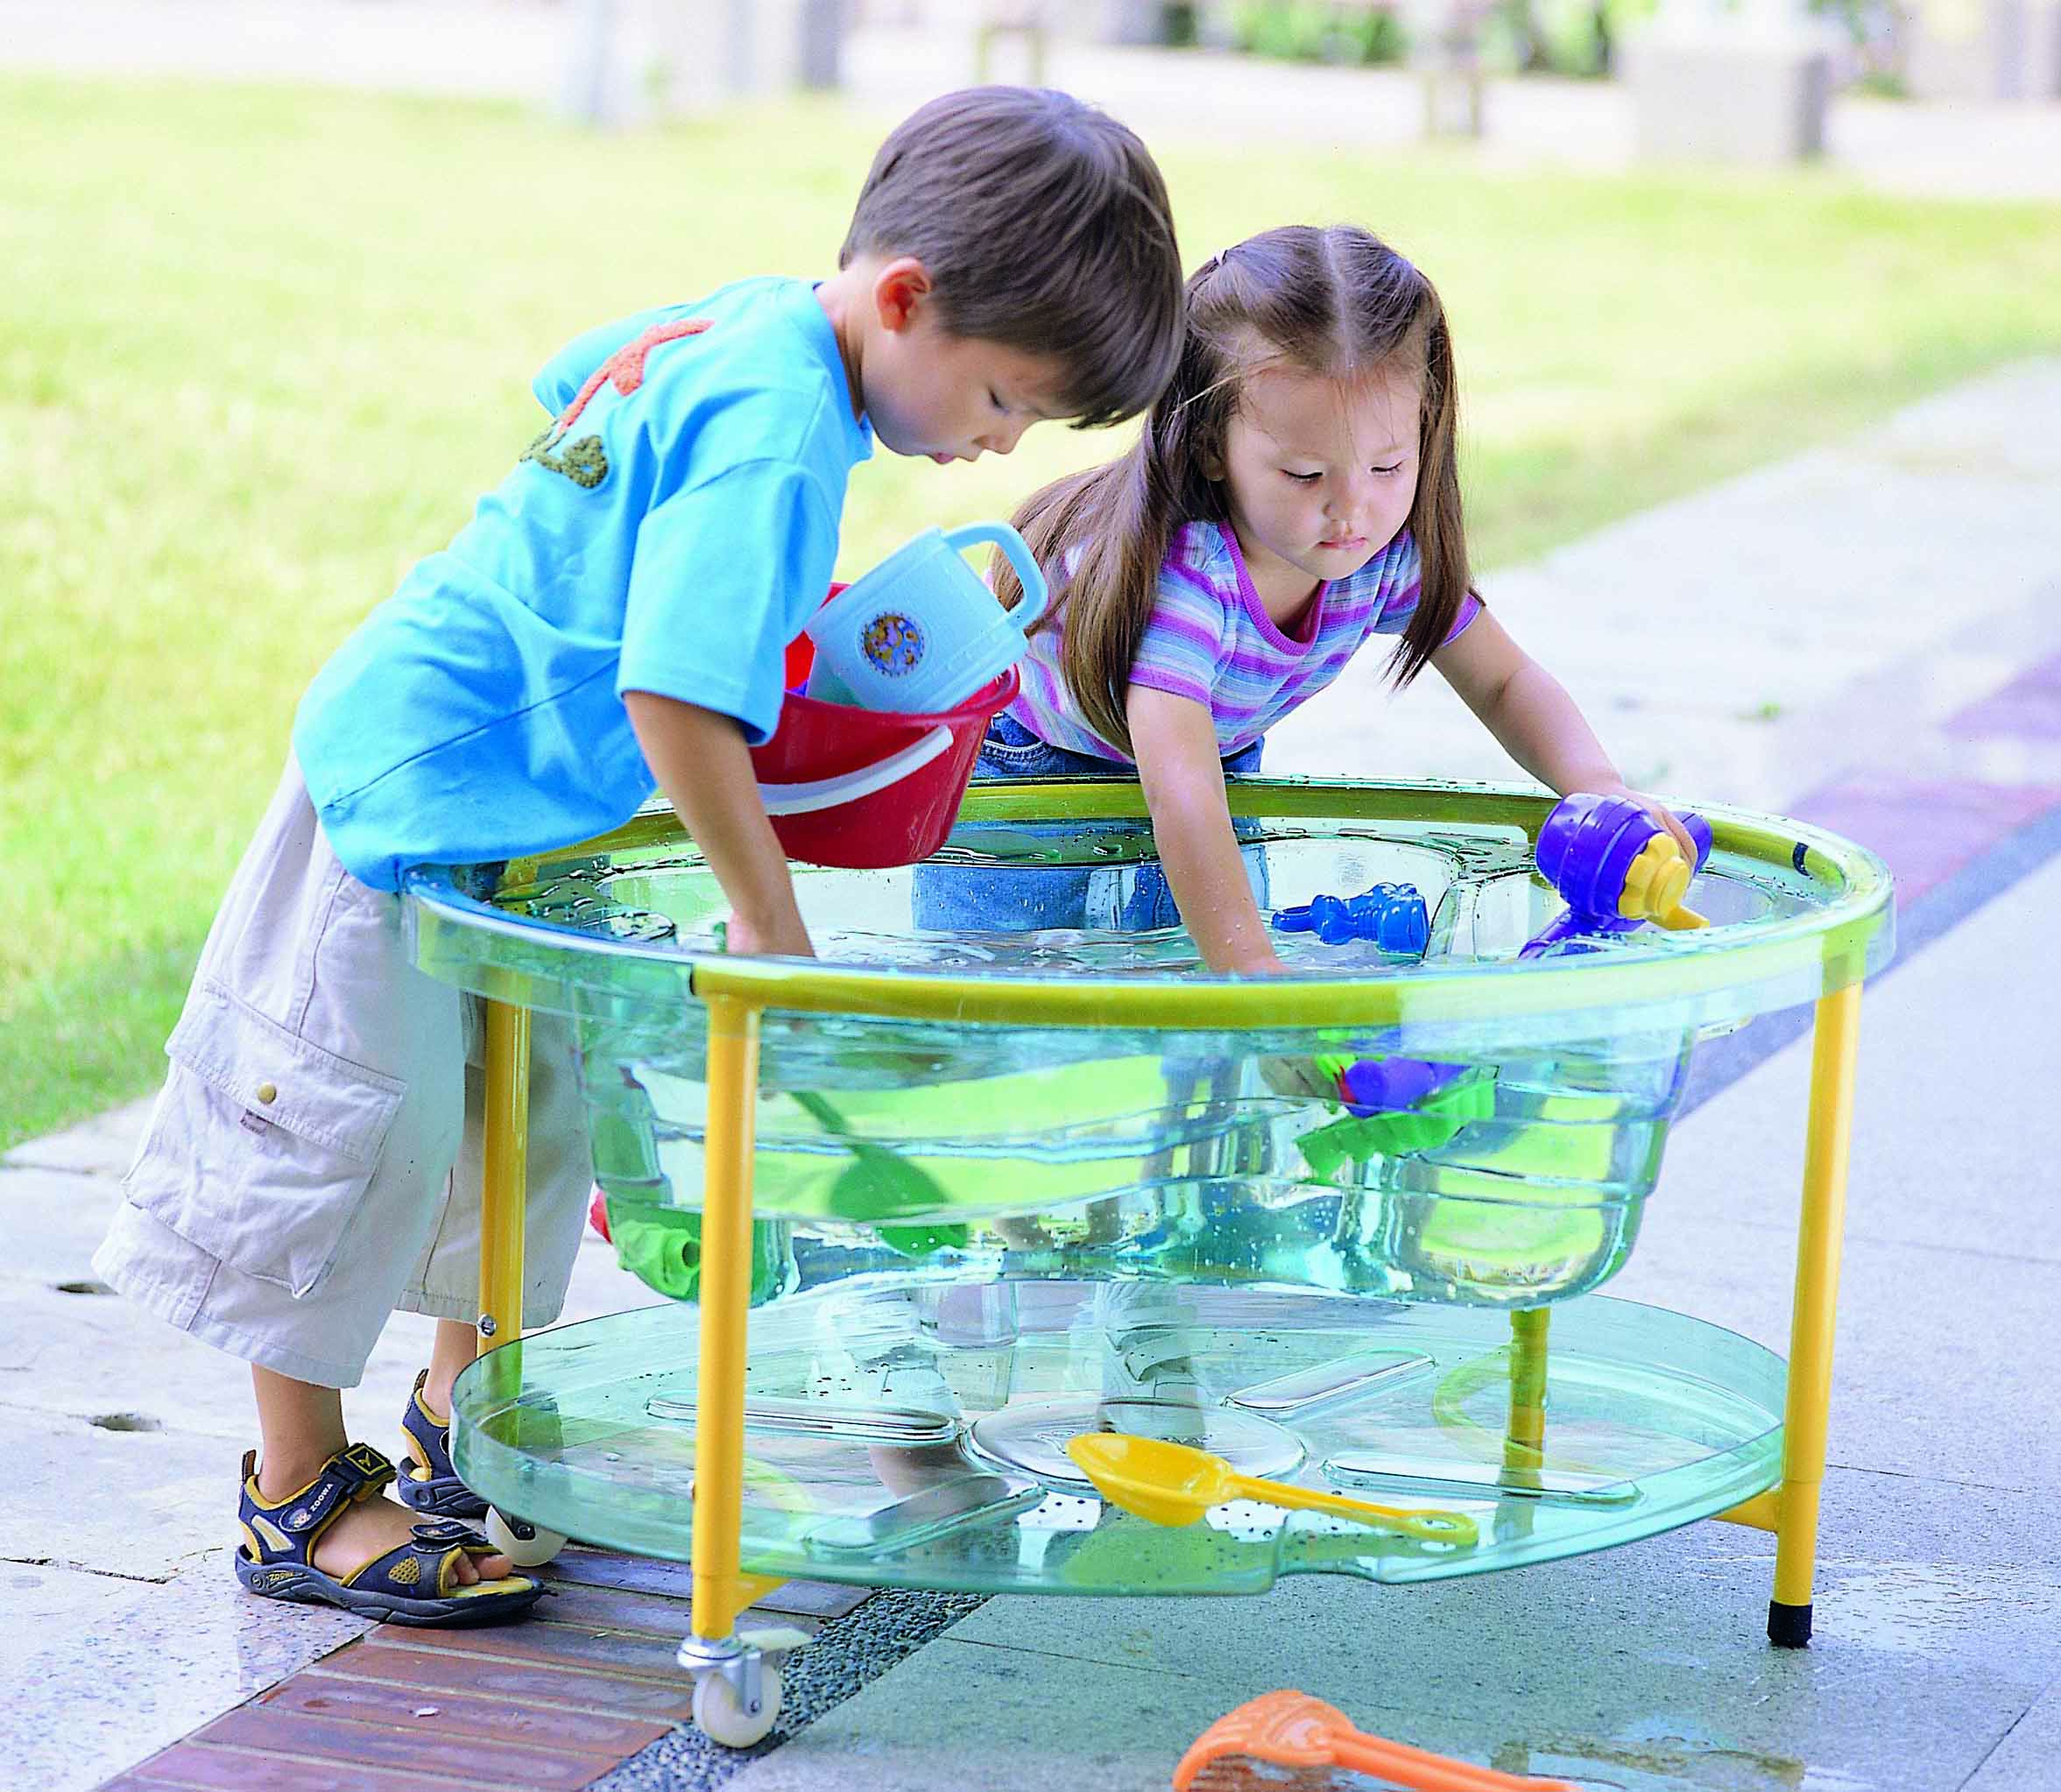 Столик для воды. WPL kt2001-00c стол для игр с водой и песком l89см x w63см x h44-58см, прозрачный. Столик с водой для детей игровой. Столик для песка и воды детский. Стол для игр с песком и водой.